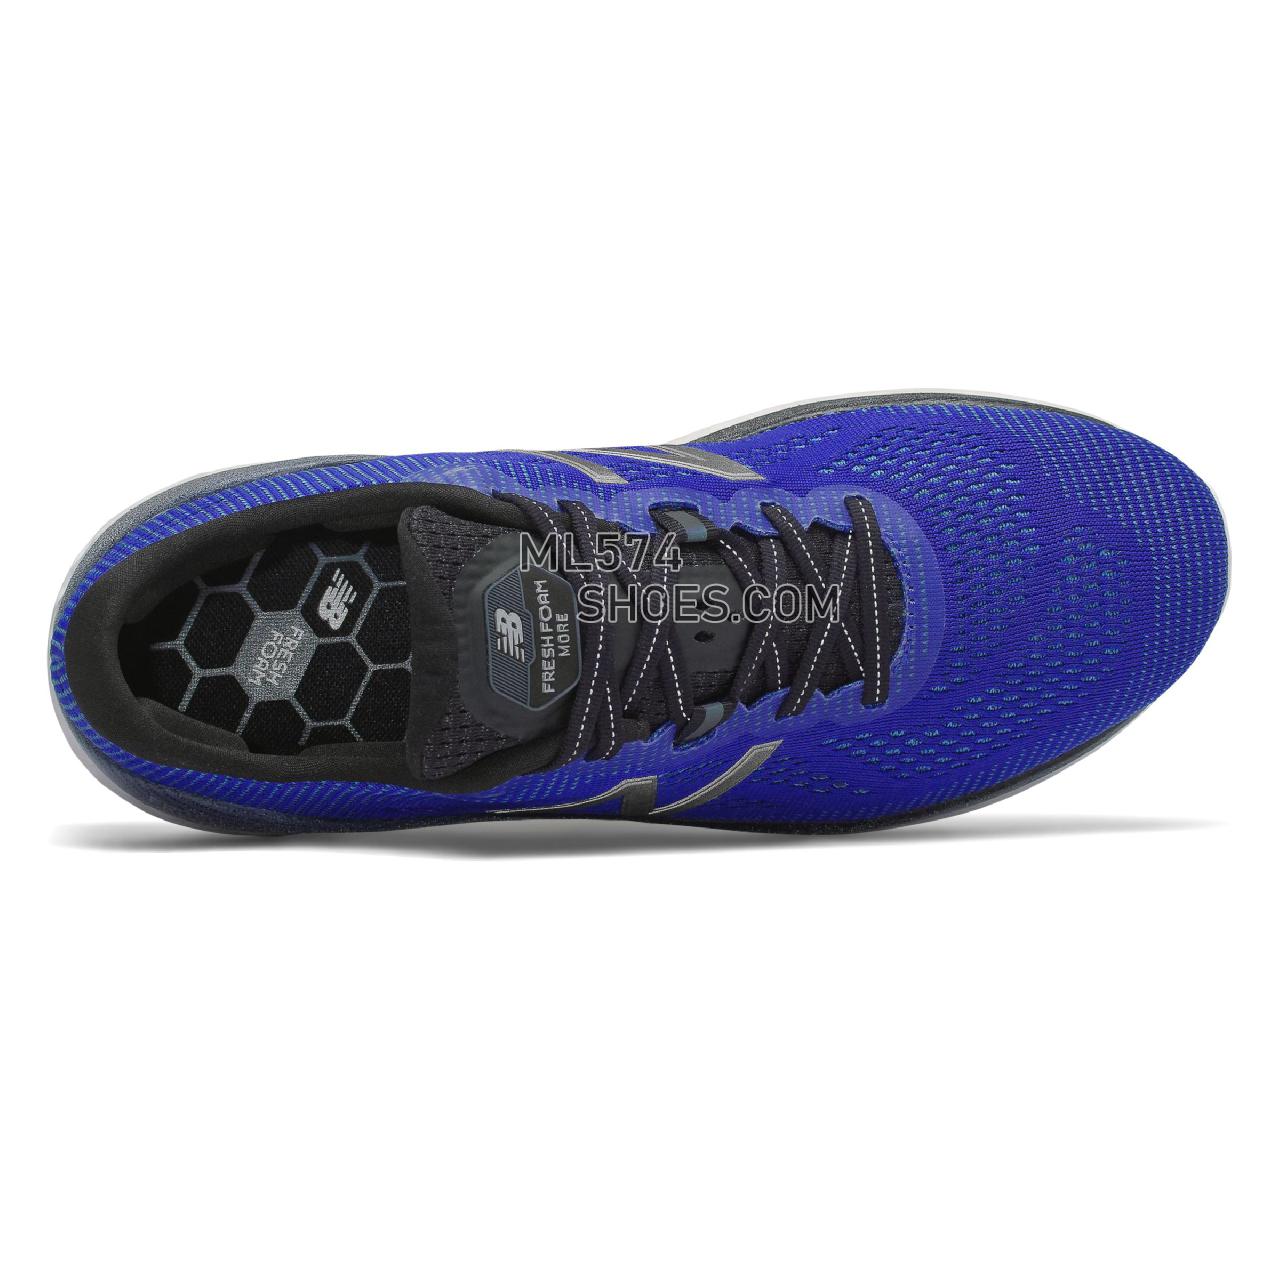 New Balance Fresh Foam More - Men's Neutral Running - UV Blue with Black - MMORLB